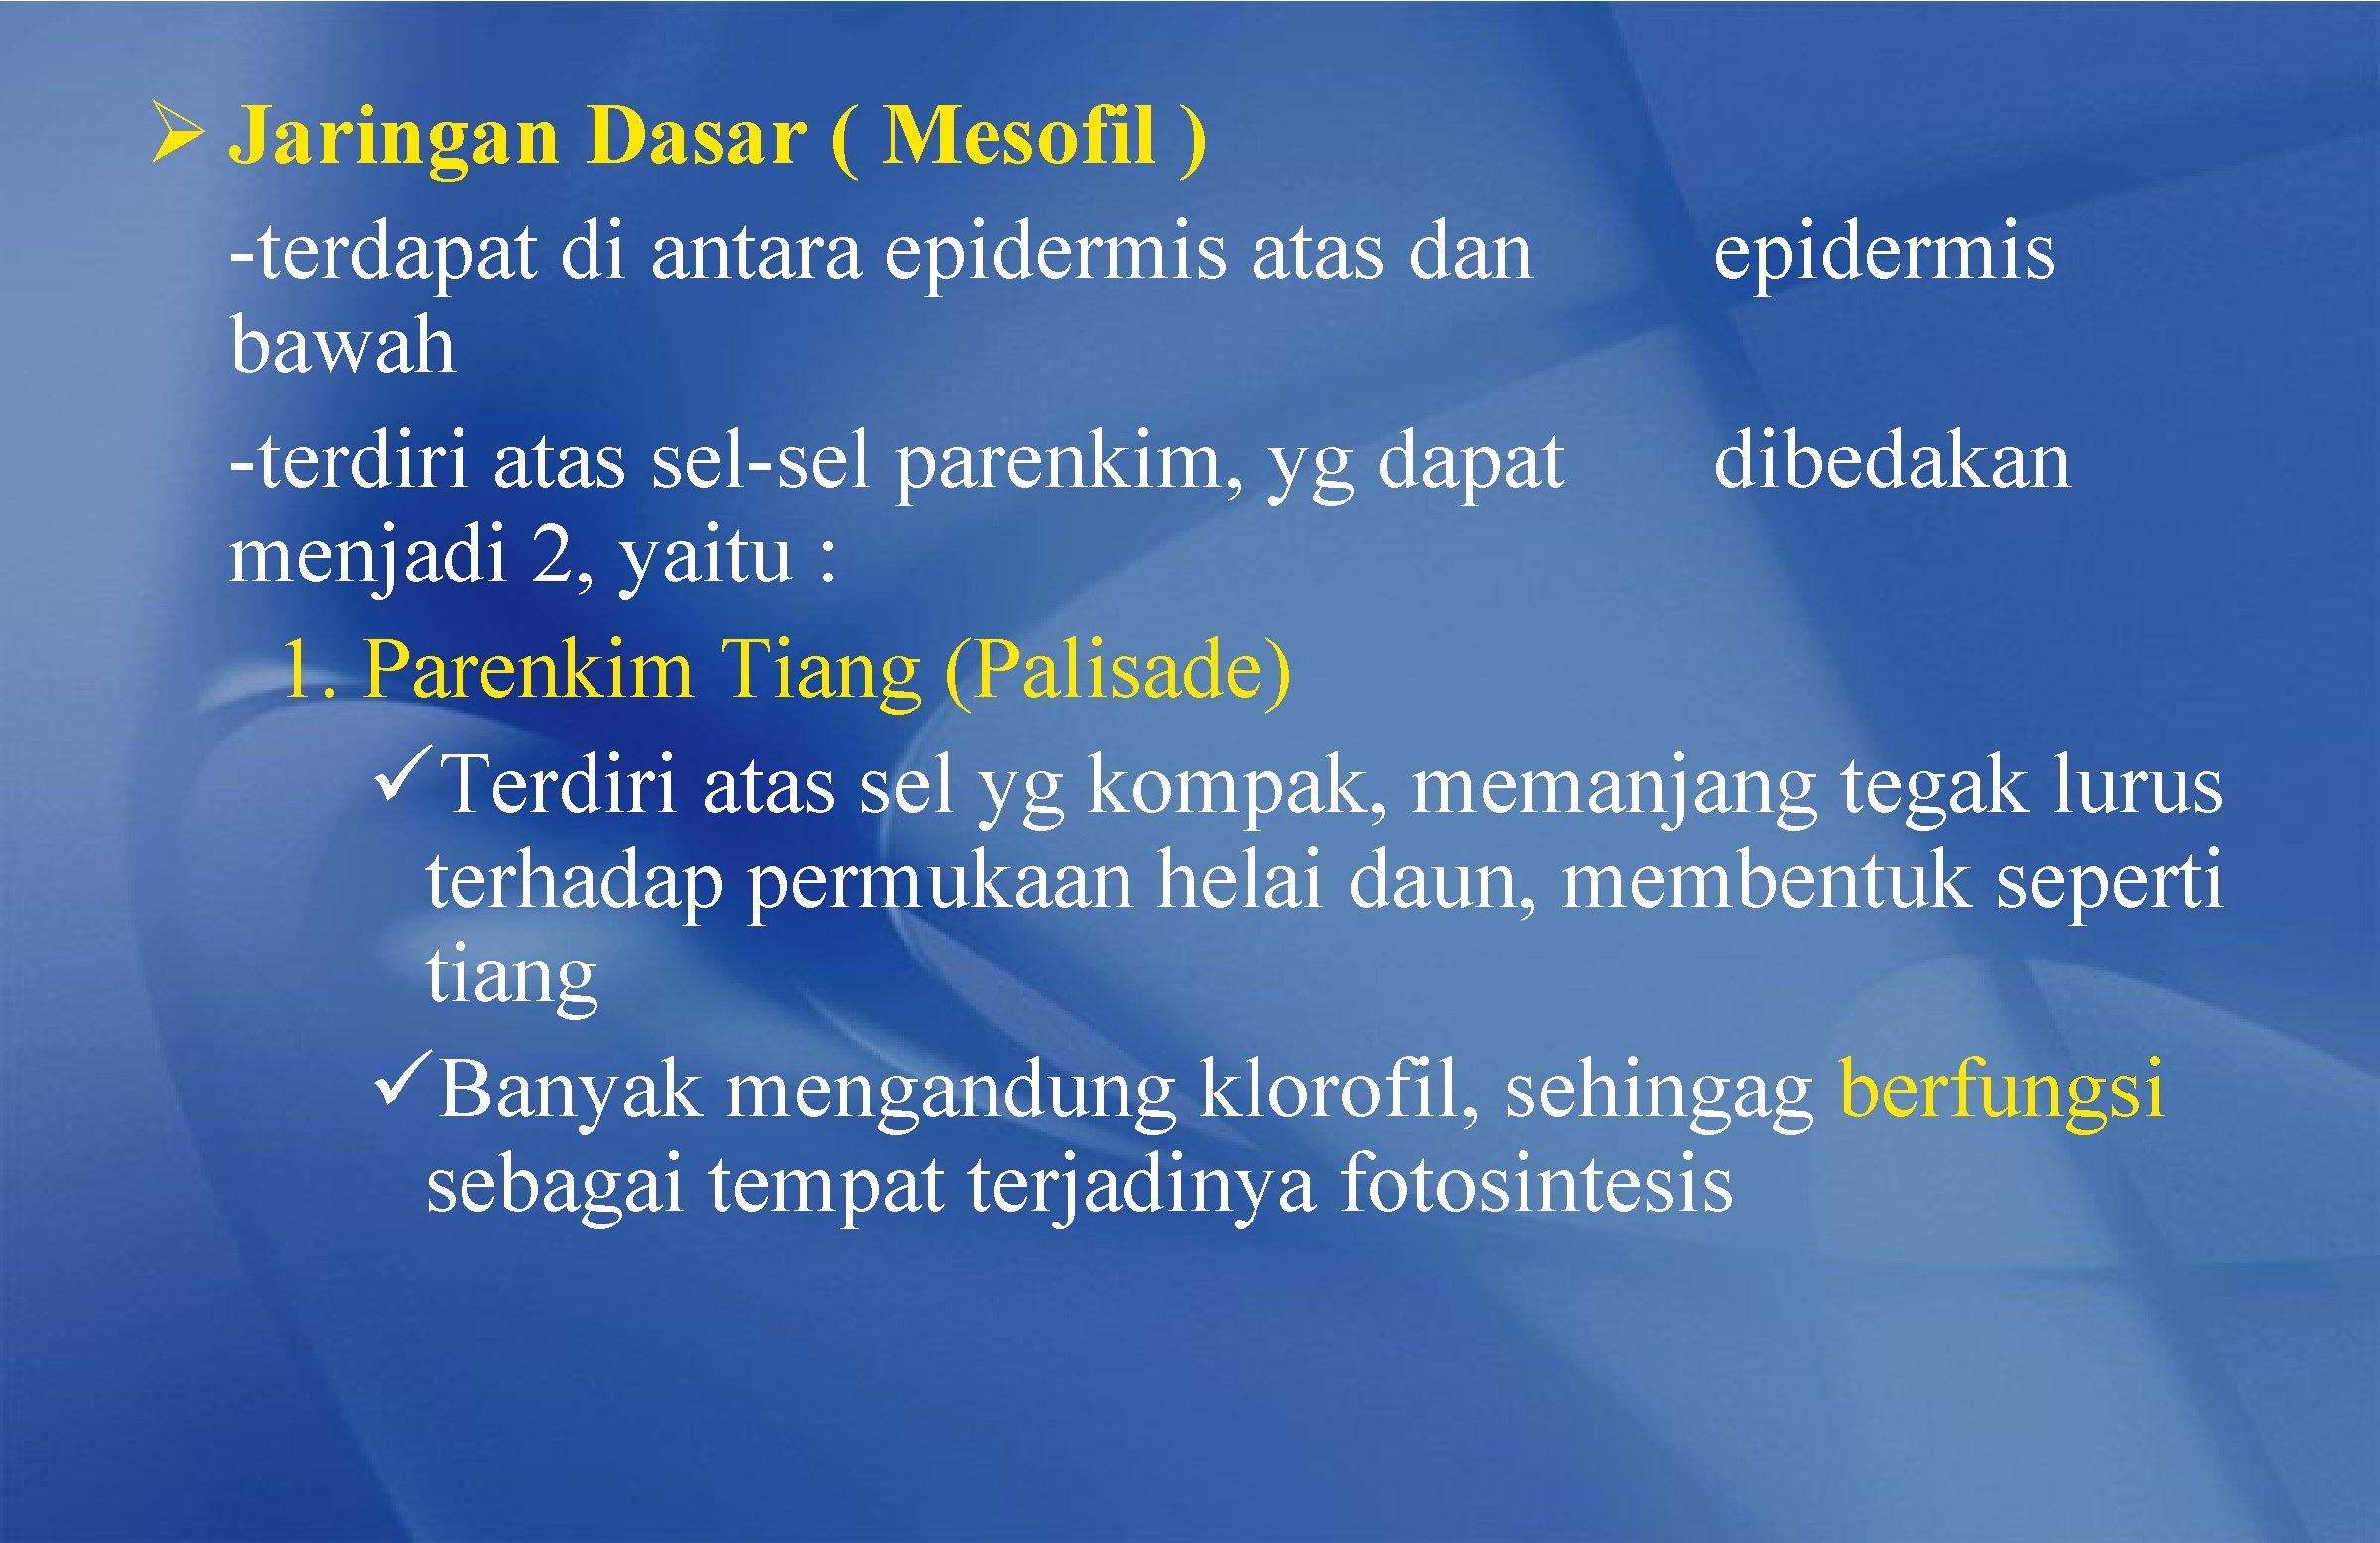 Ø Jaringan Dasar ( Mesofil ) -terdapat di antara epidermis atas dan epidermis bawah